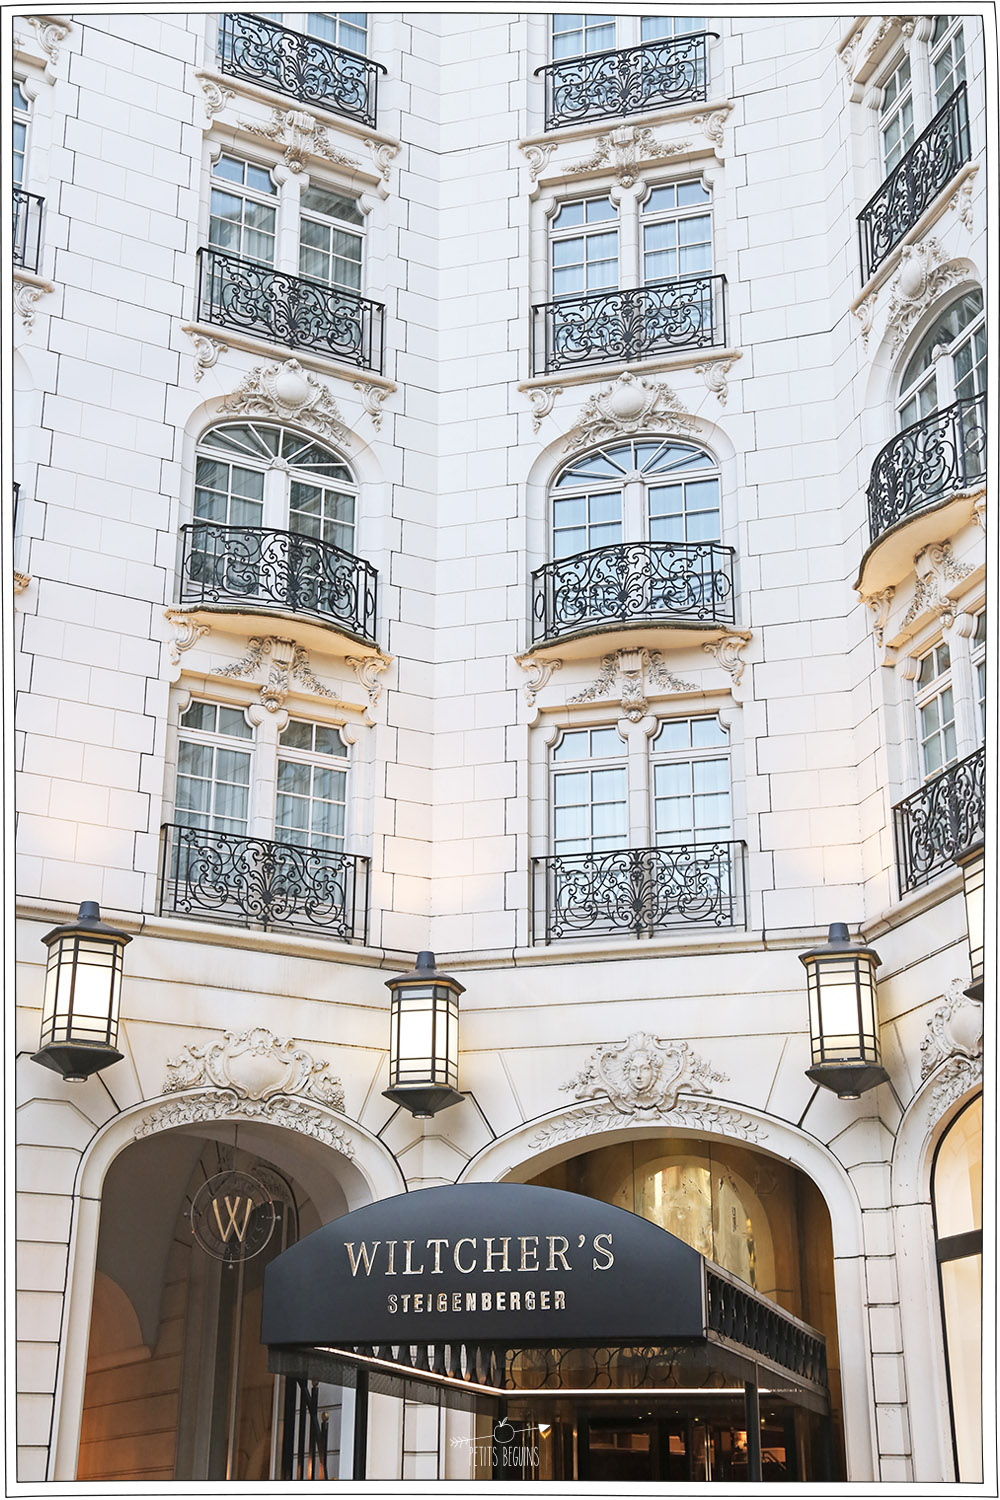 Hotel Wiltcher's - Bruxelles - Bonne adresse - Petits Béguins